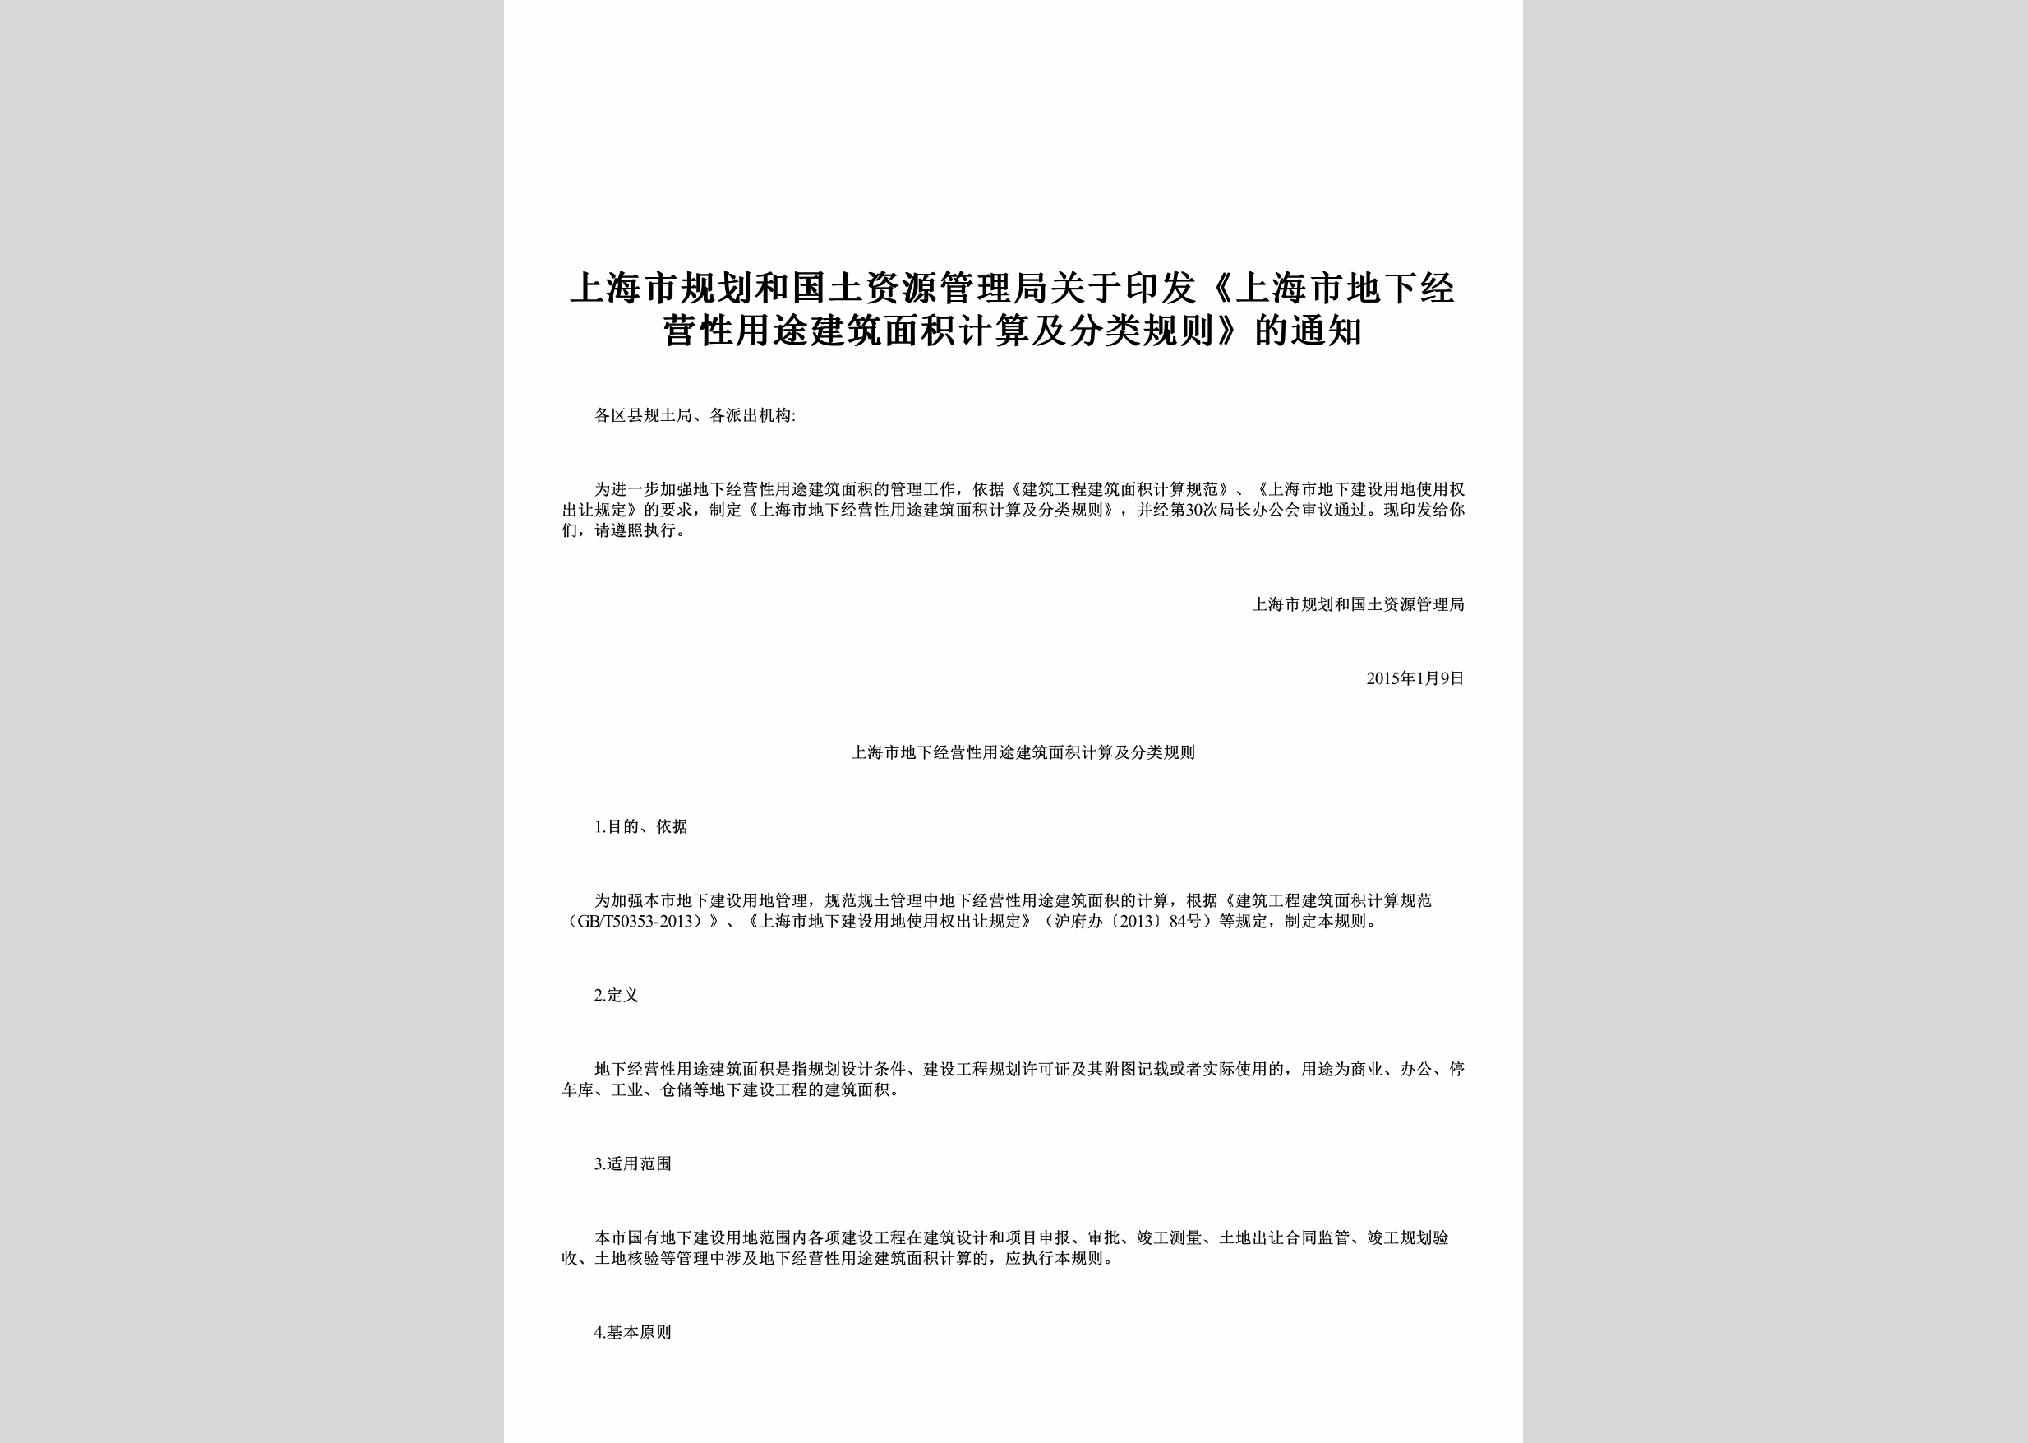 SH-JZMJFLGZ-2015：关于印发《上海市地下经营性用途建筑面积计算及分类规则》的通知